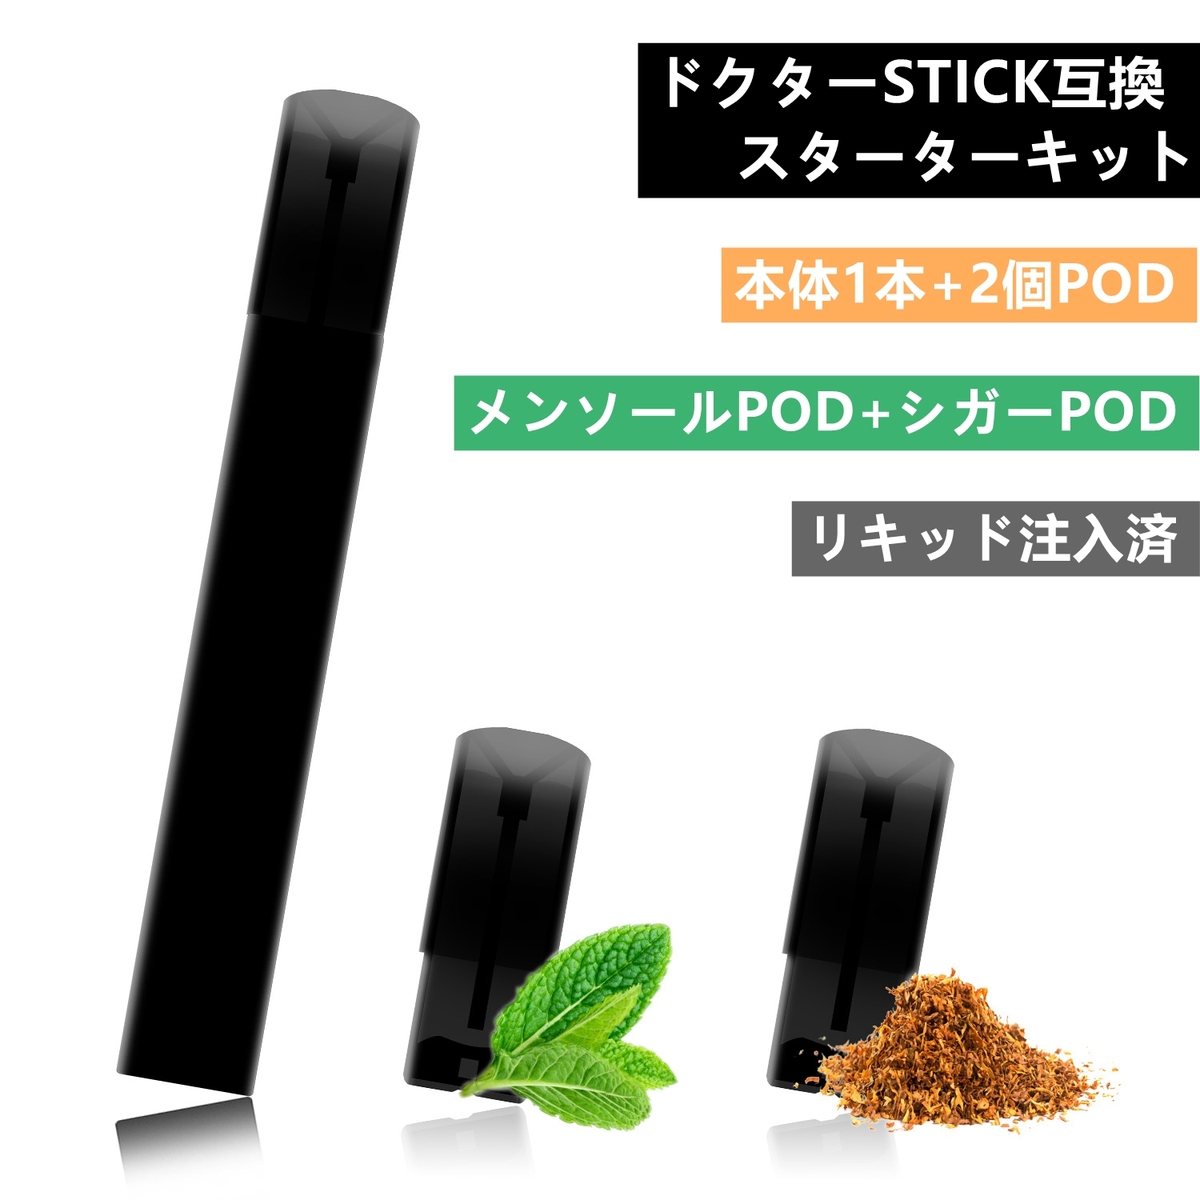 【楽天市場】ドクターステック STICK 電子タバコ 加熱式タバコ 本体 